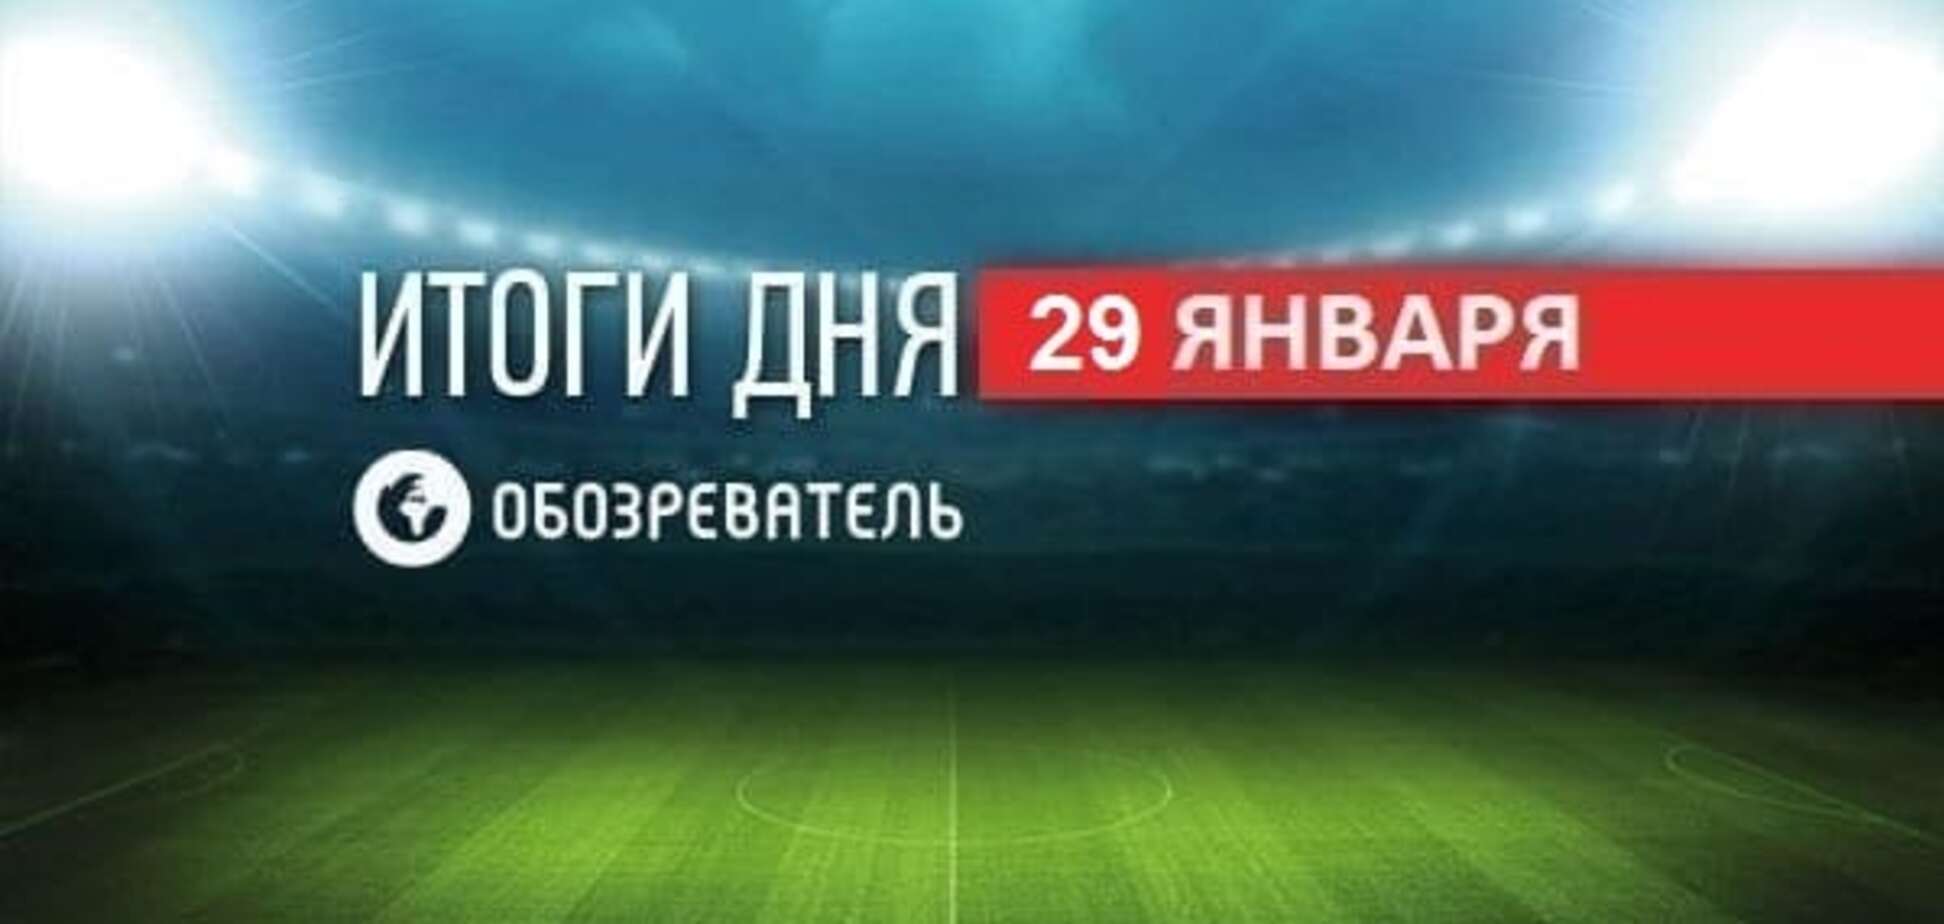 Ребров объявлен врагом 'ДНР'. Спортивные итоги 29 января